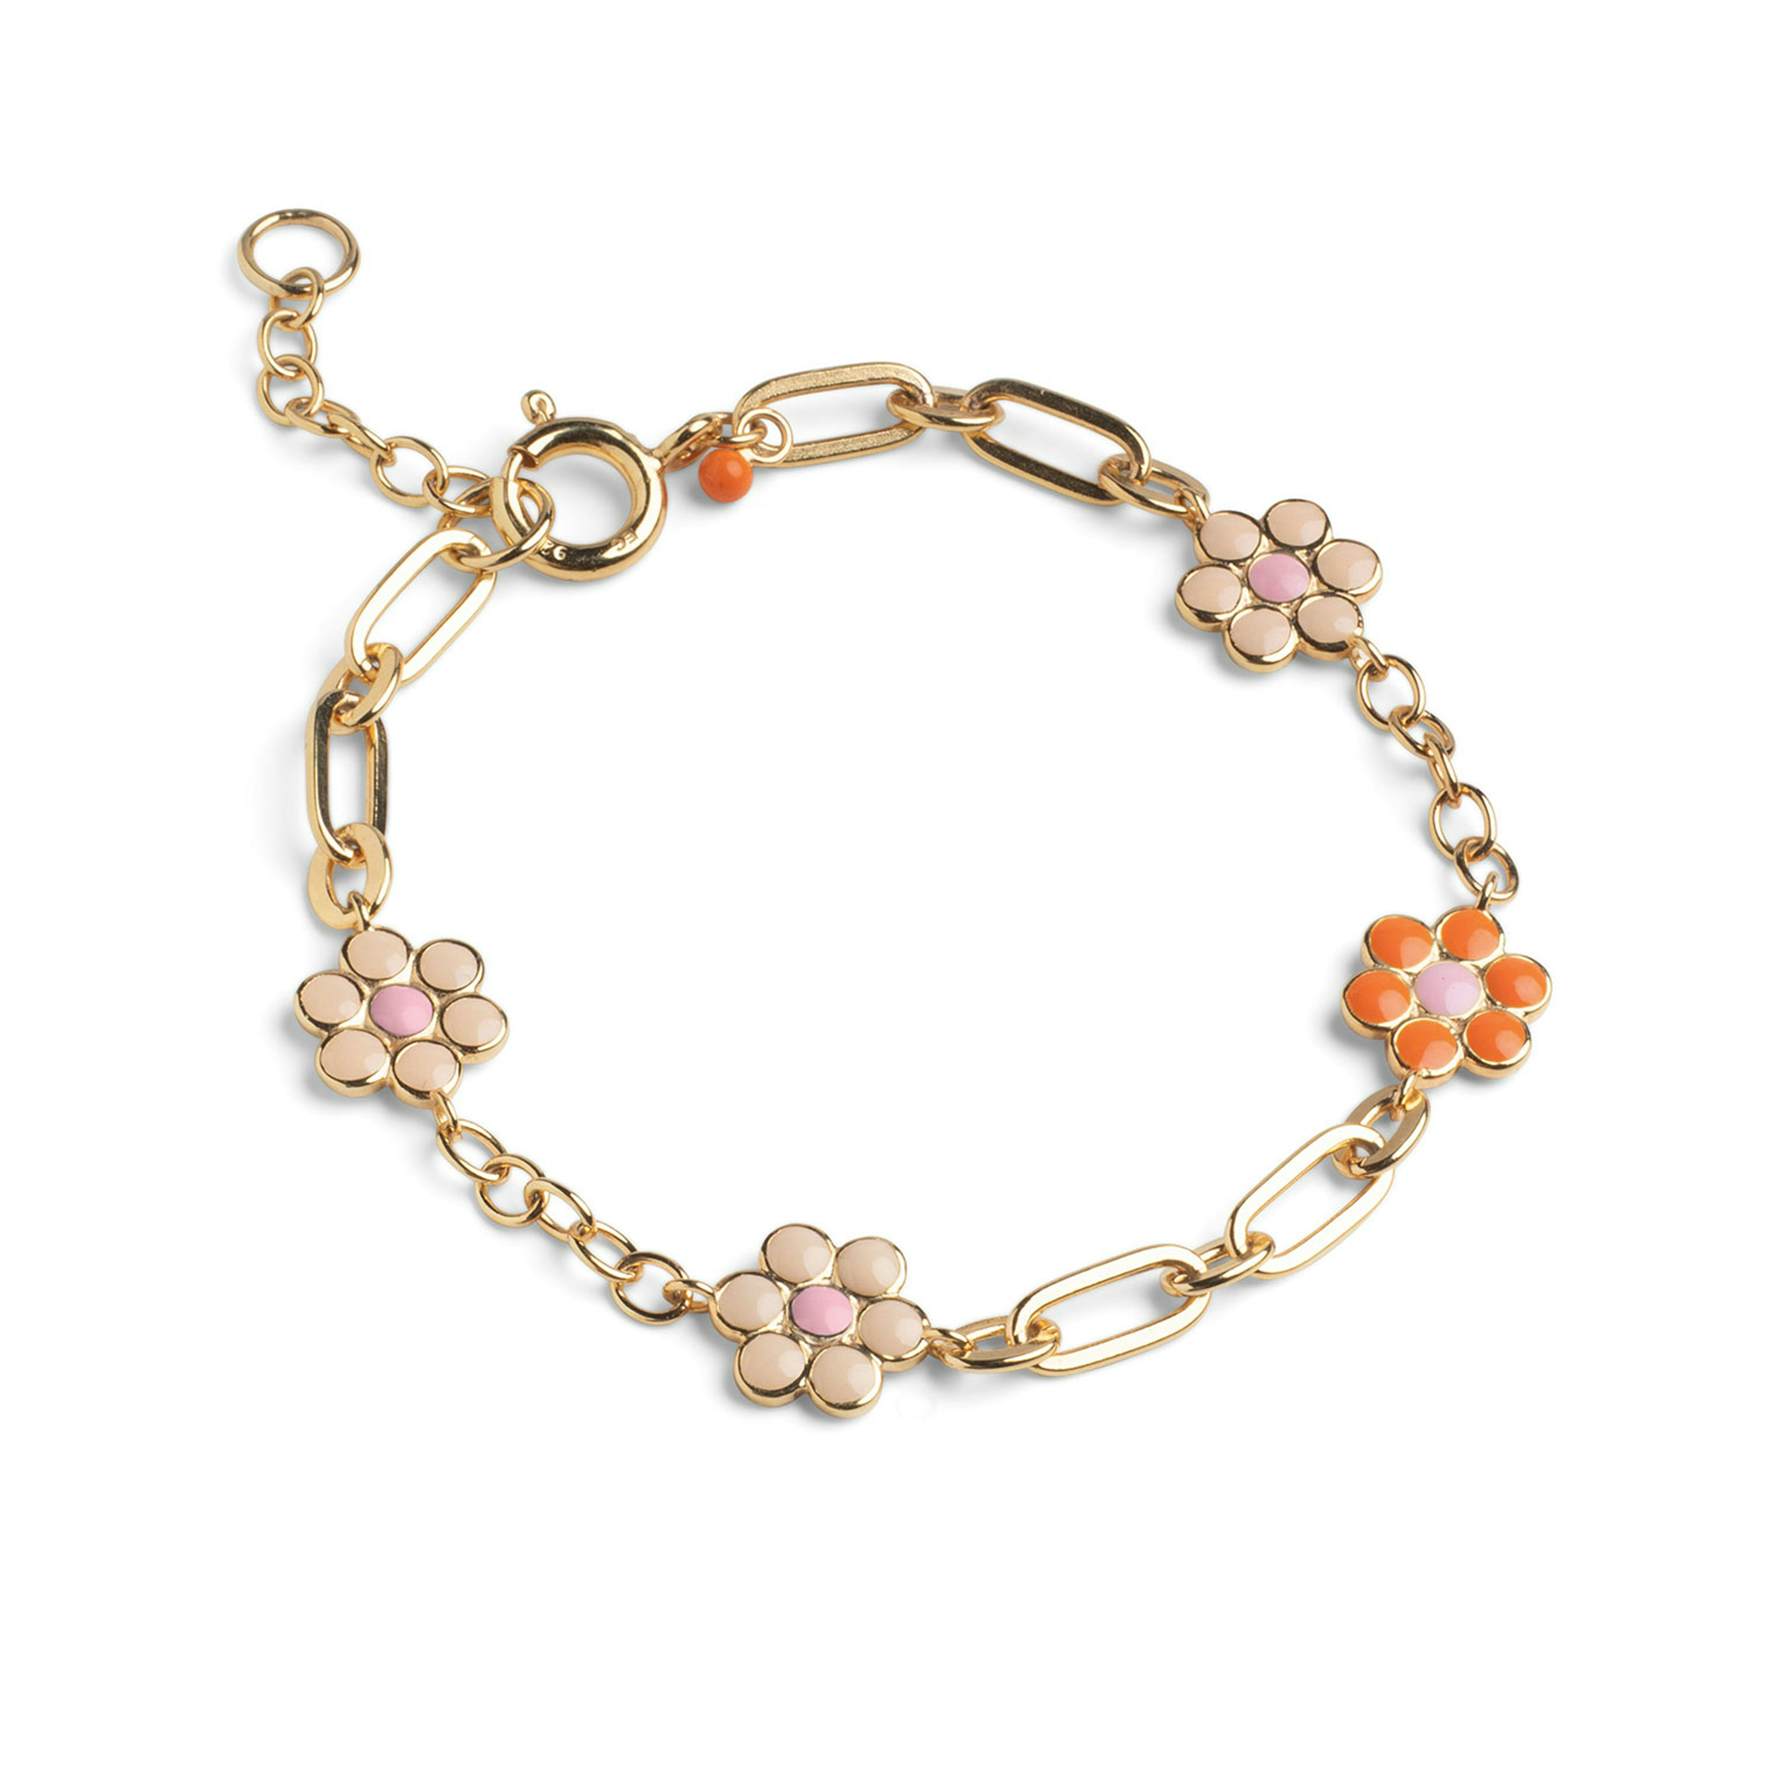 Blossom Bracelet Orange/Beige/Light Blue/Light Pink von Enamel Copenhagen in Vergoldet-Silber Sterling 925||Blank